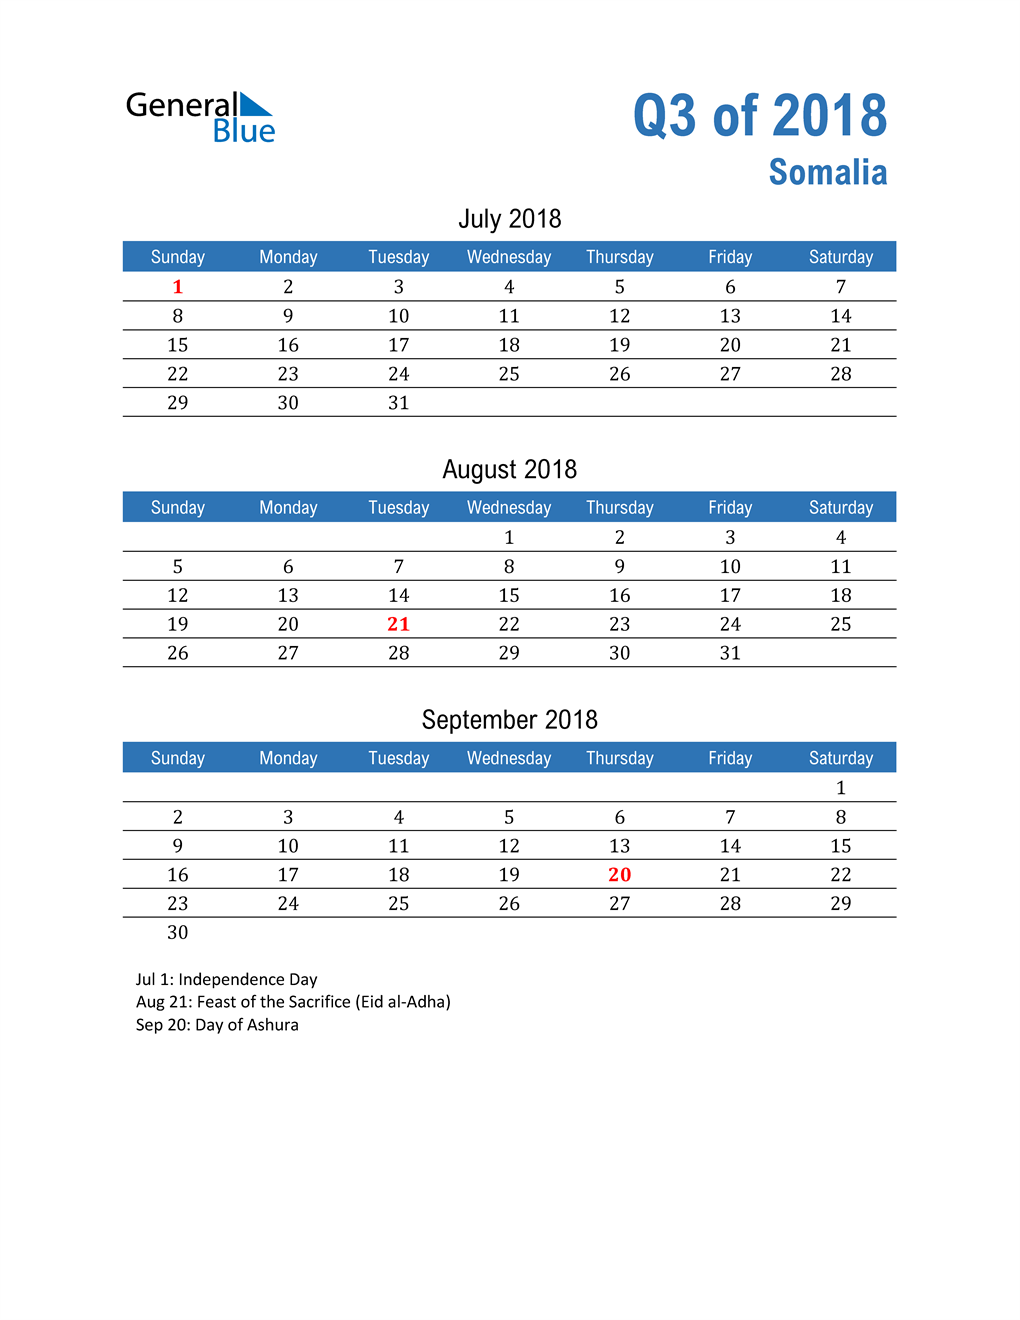  Somalia 2018 Quarterly Calendar 